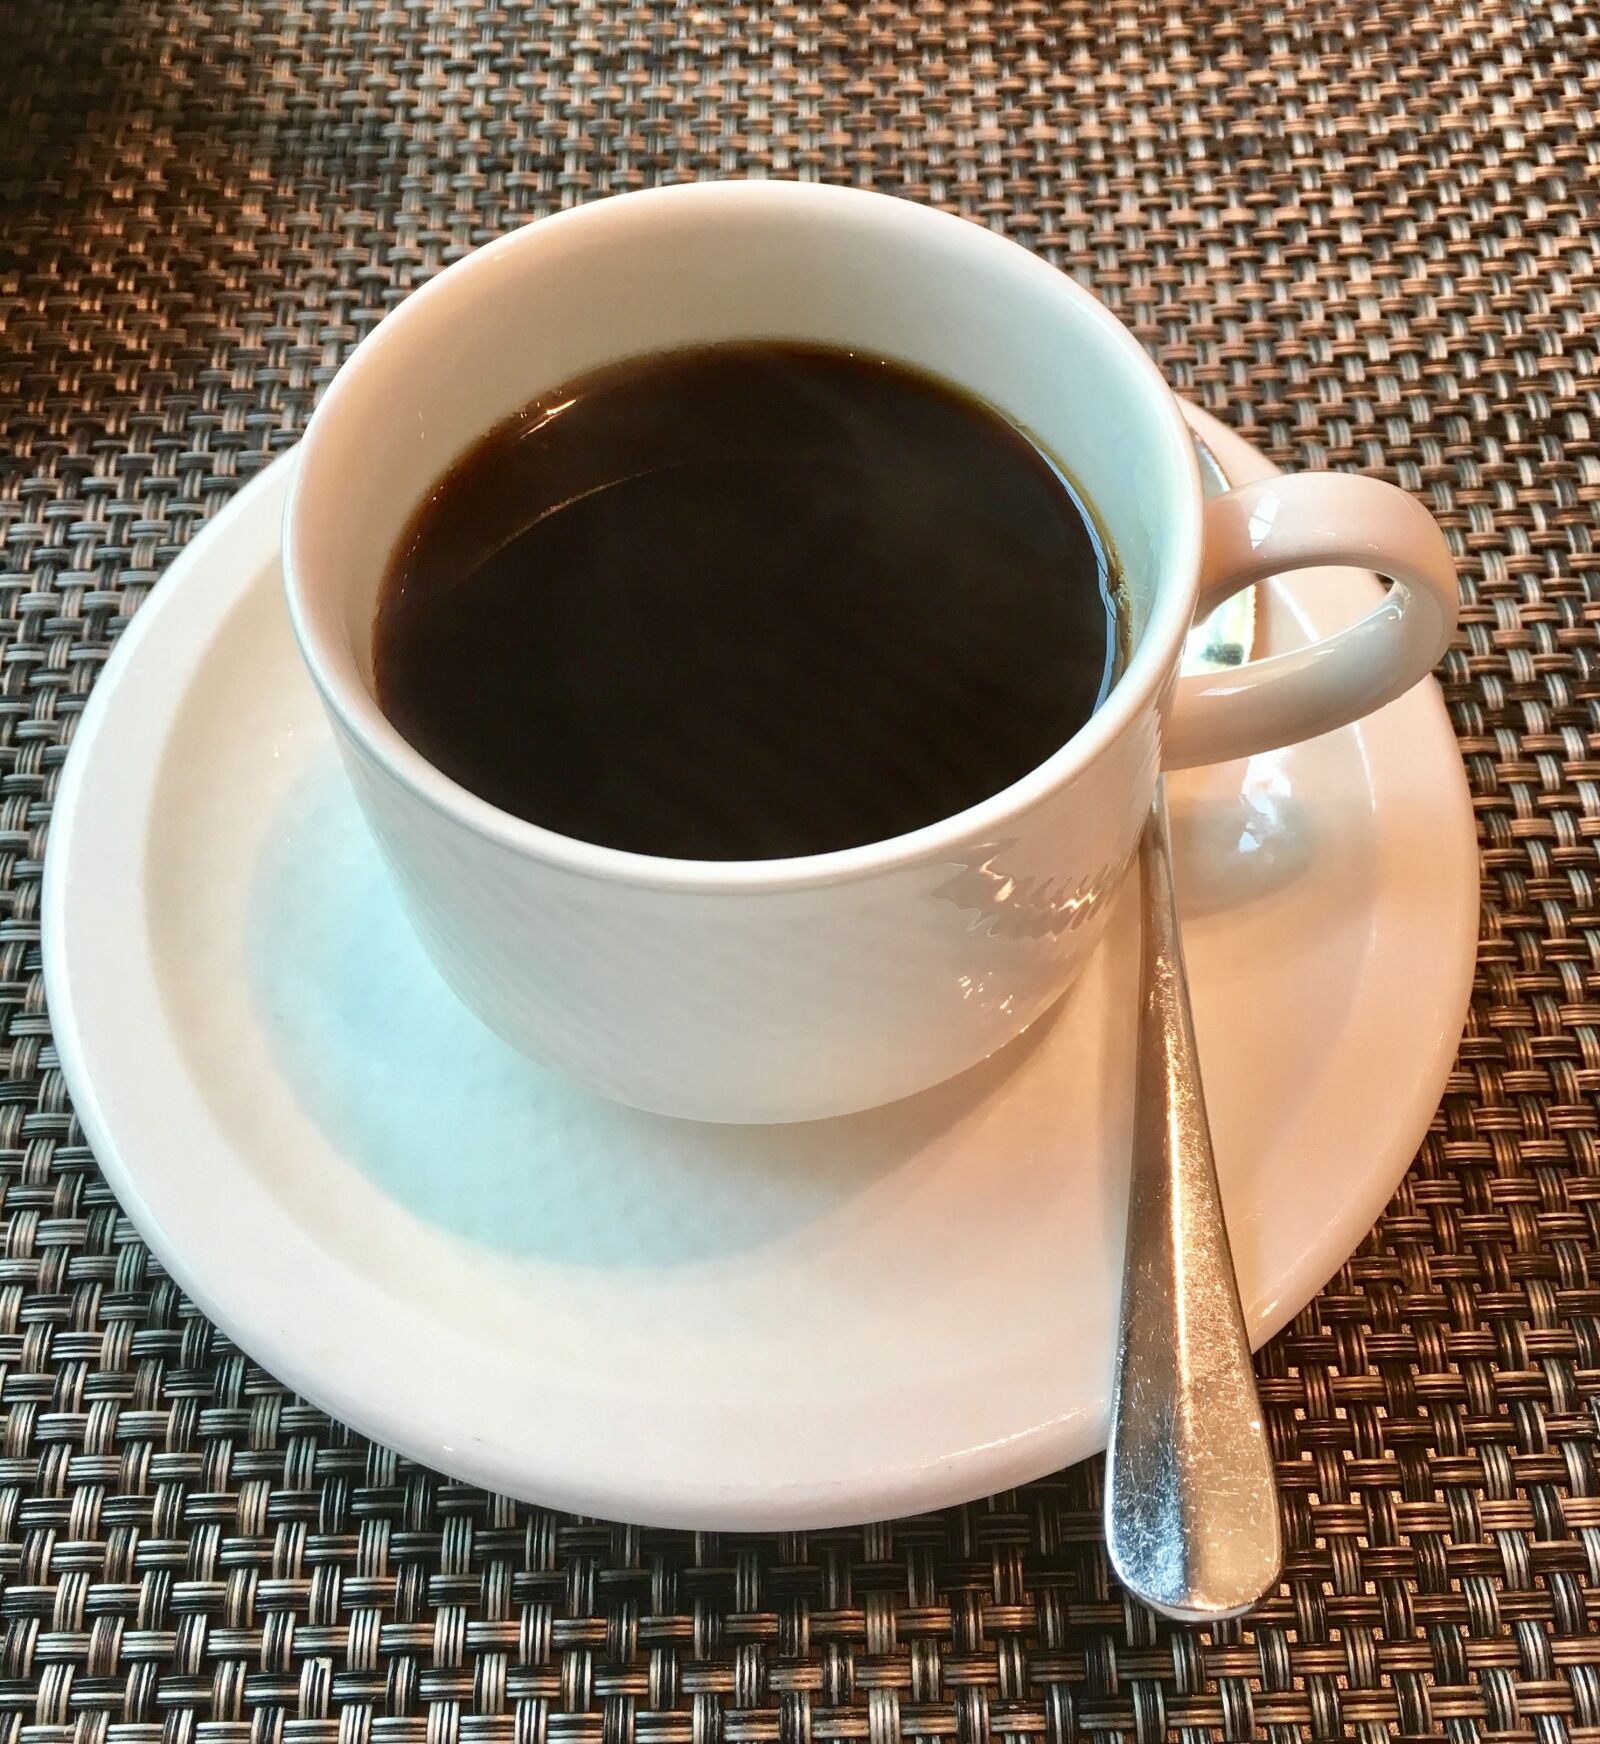 Apple iPhone 6s sample photo. Coffee, coffee mug, coffee photography